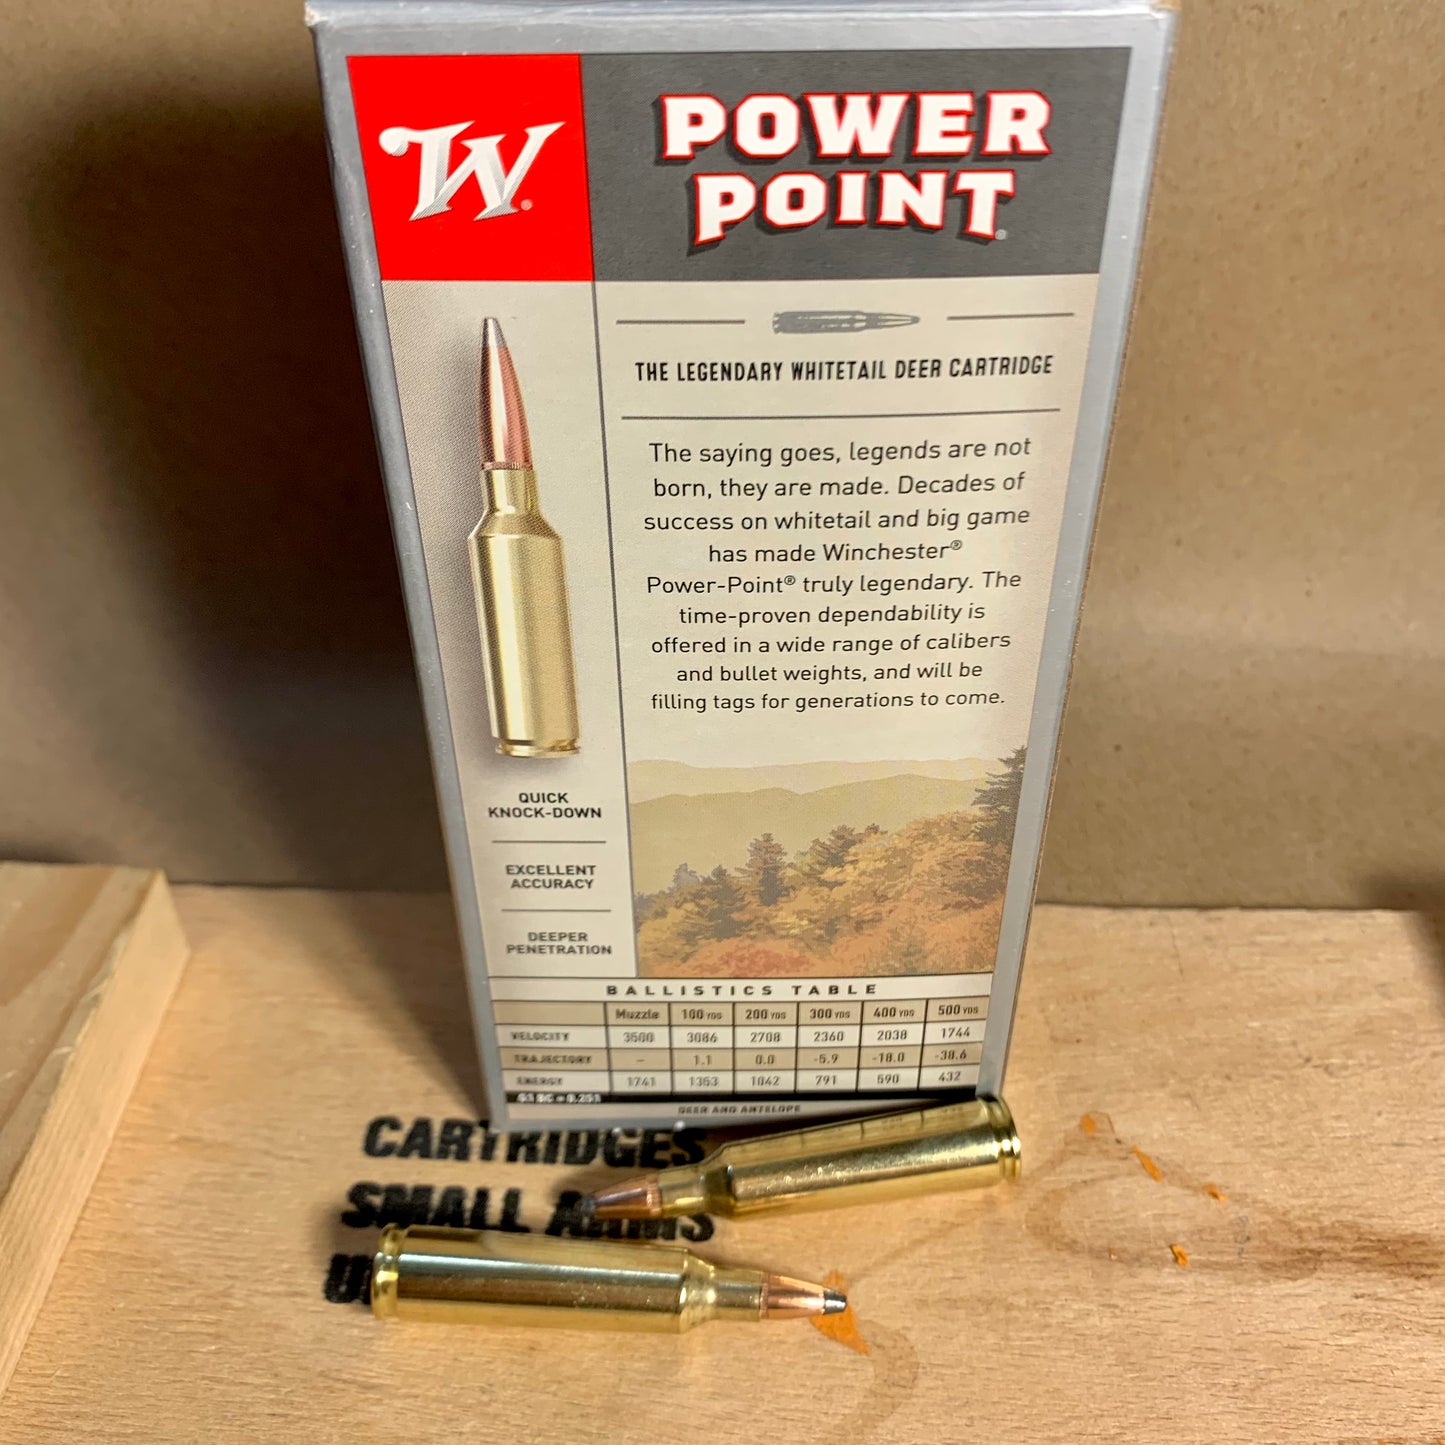 20 Round Box Winchester Super-X Power Point .22-250 Rem. Ammo 64gr Soft Point - X222502